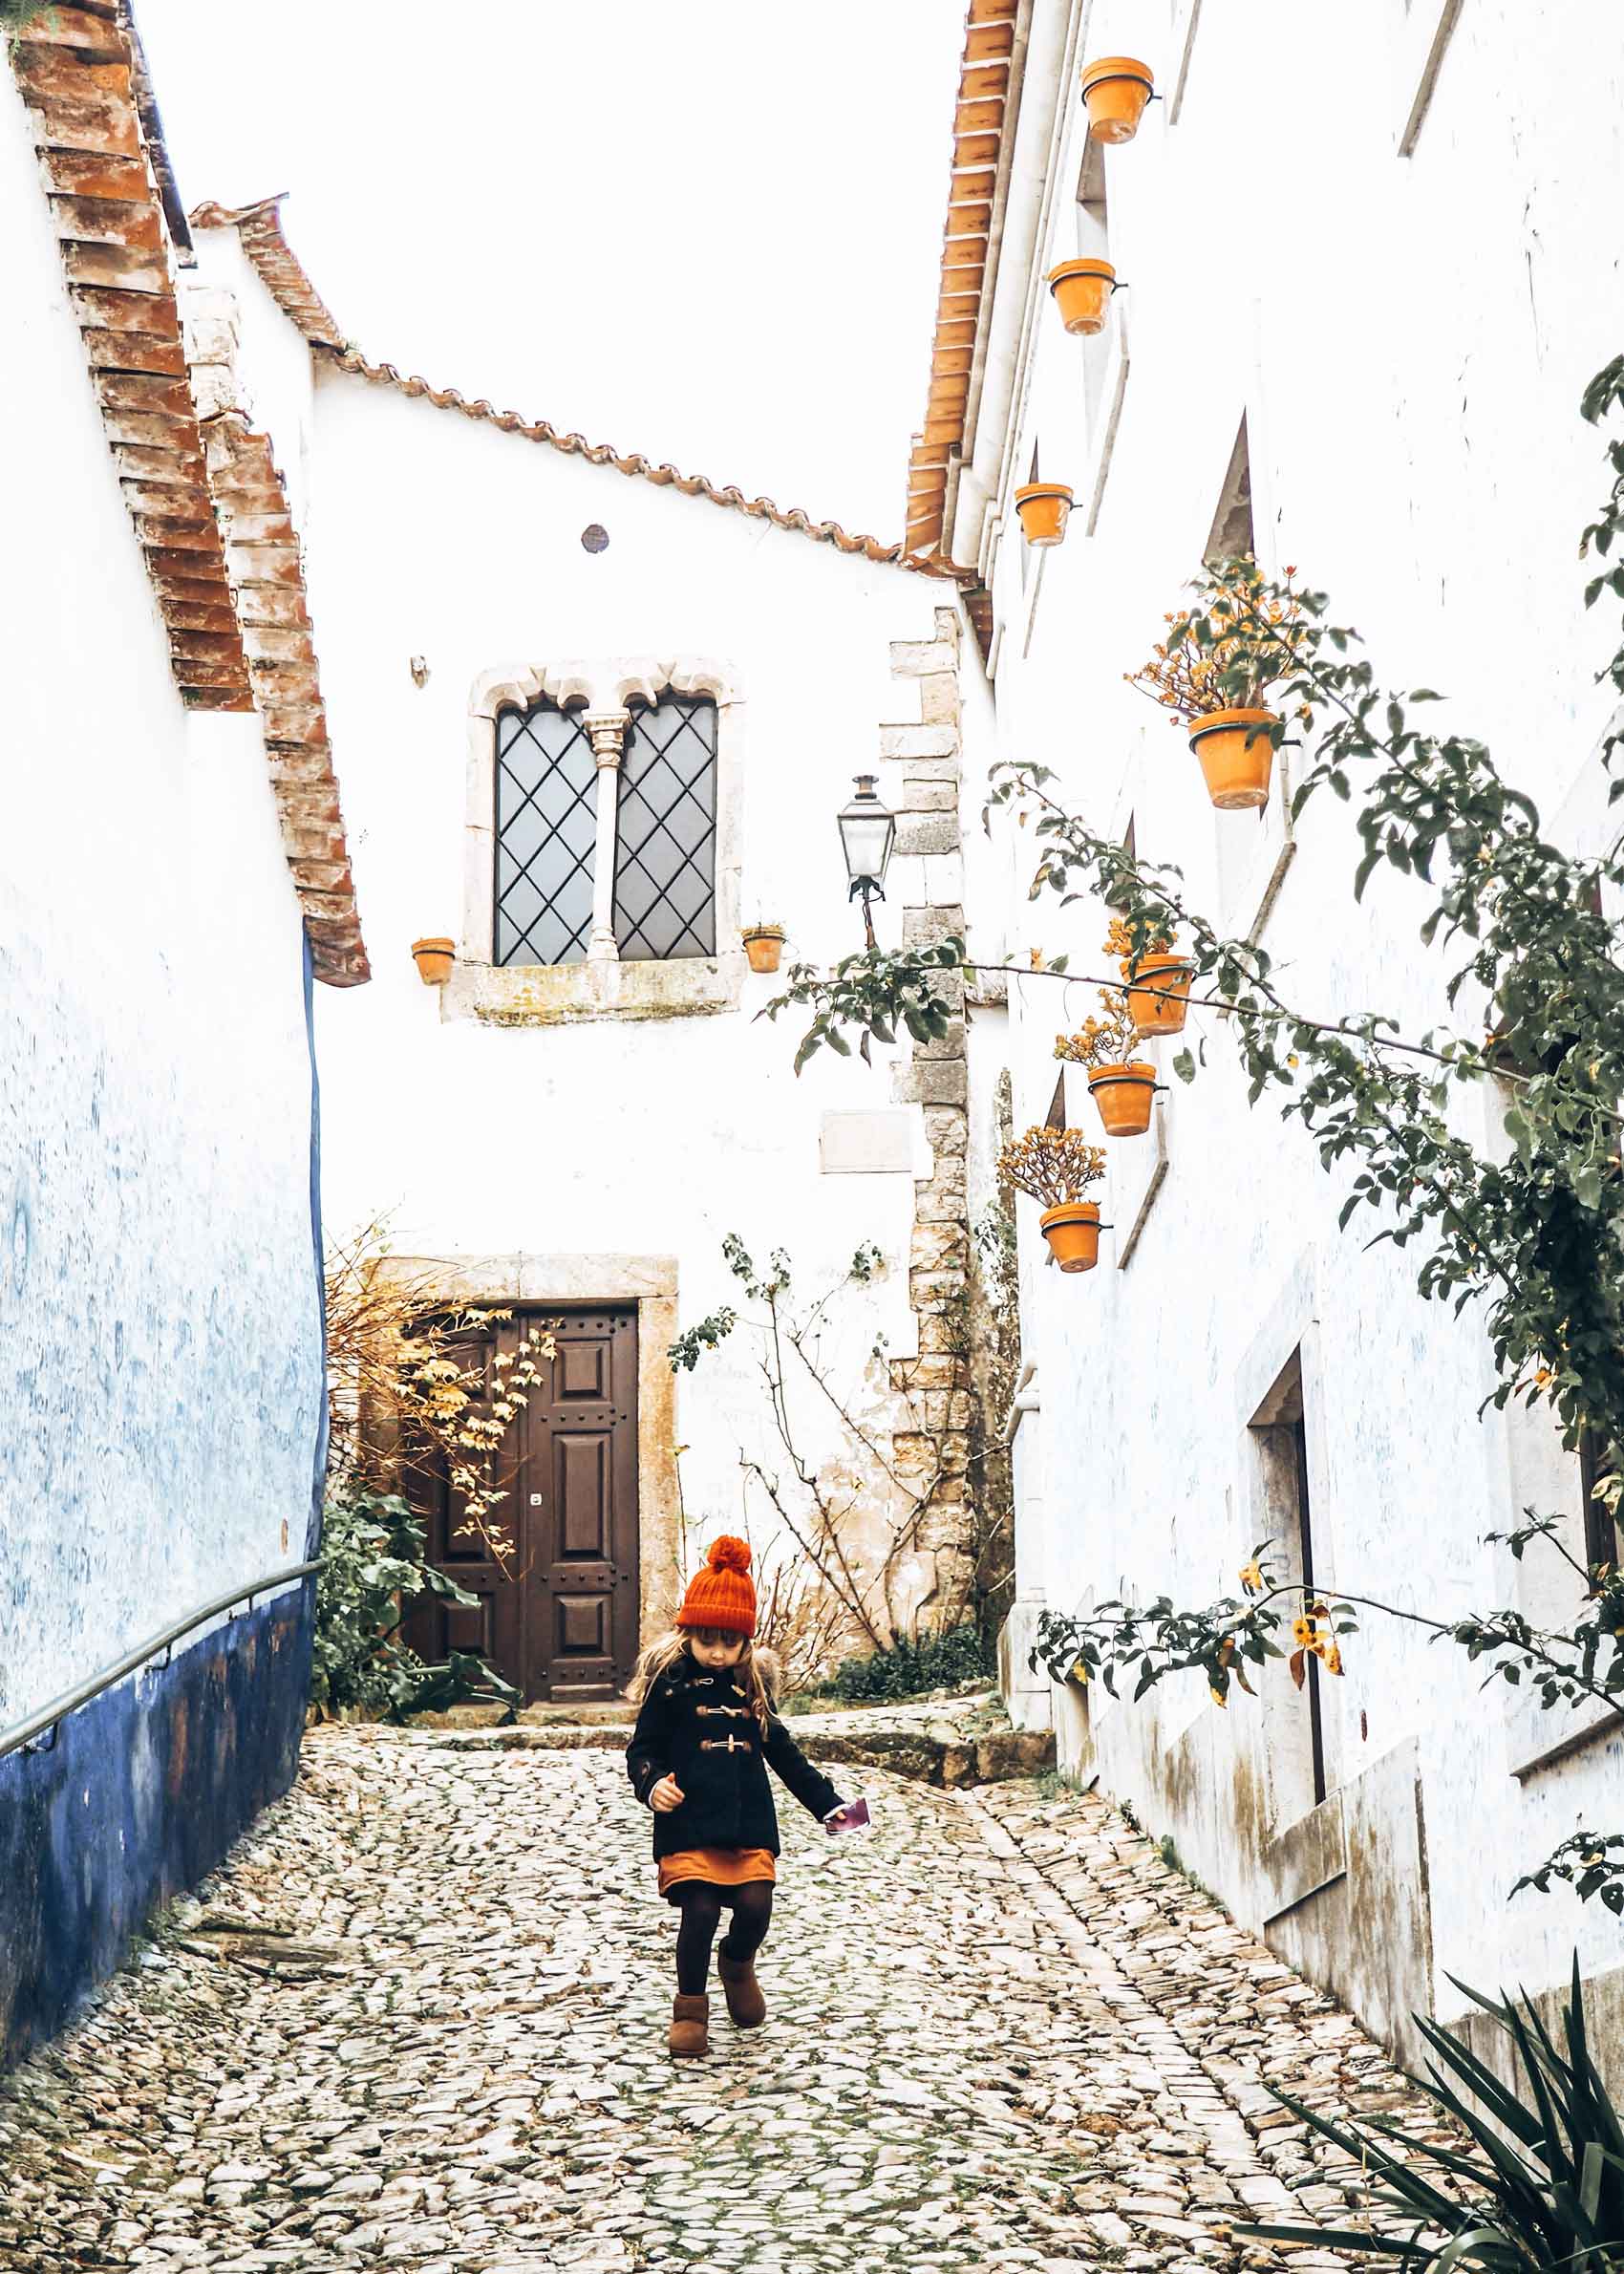 Pueblos bonitos del centro de Portugal - Obidos